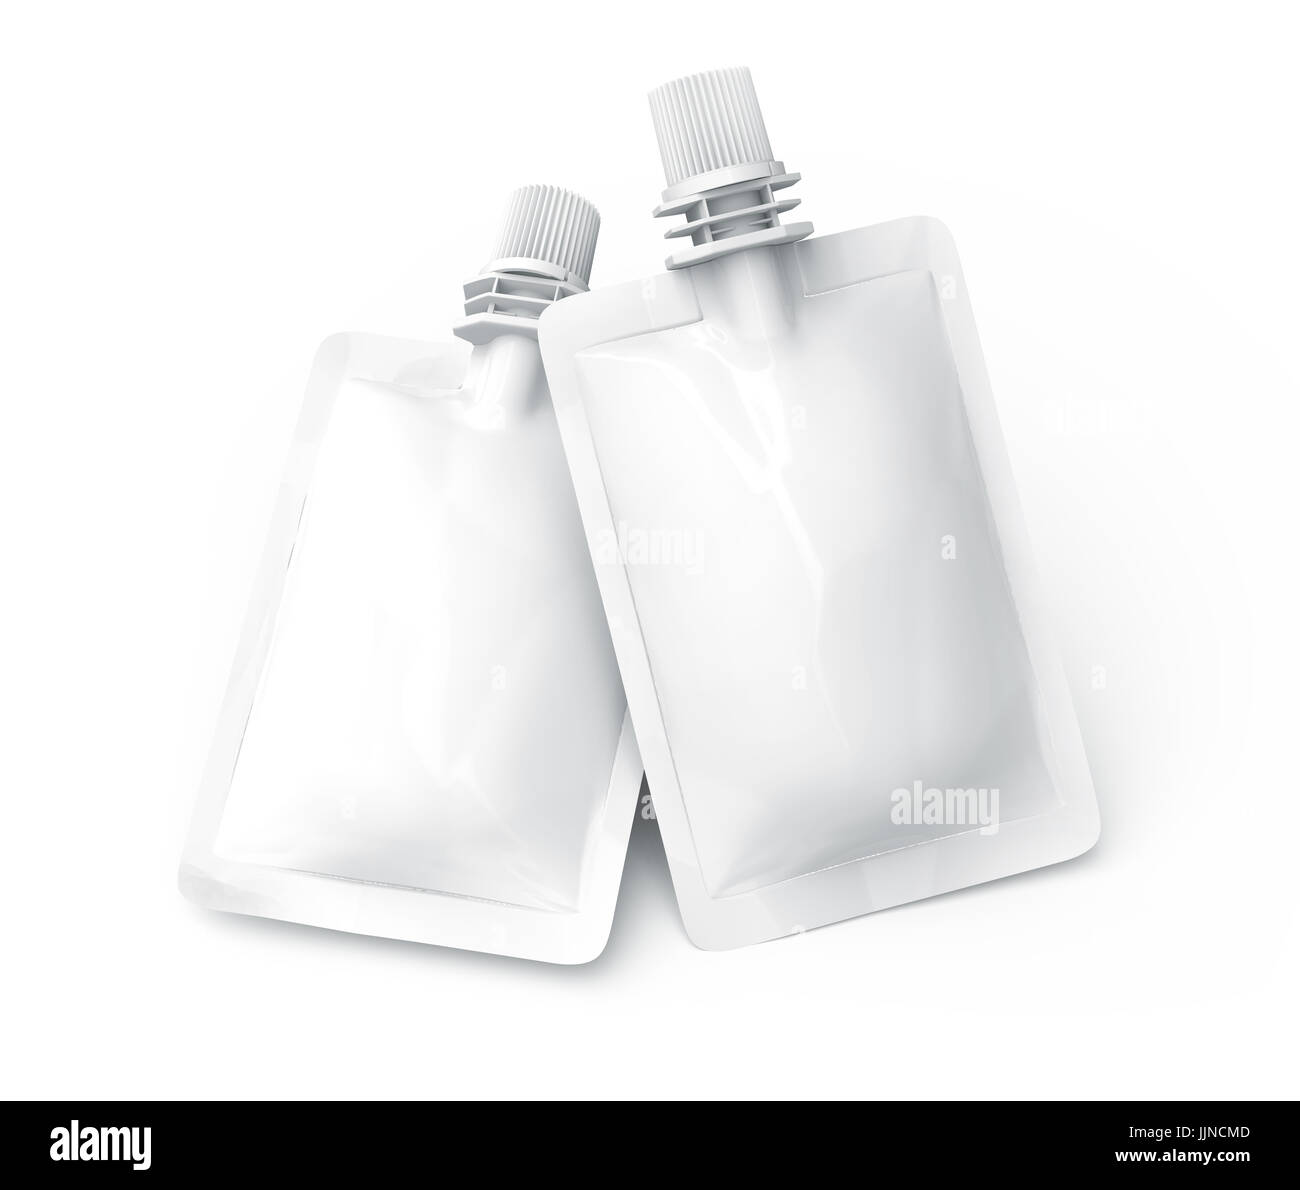 Folienbeutel für Getränk, leere Folie Tasche Modell für Getränke Design in 3D-Rendering, zwei schwimmende Beutel versiegelt Stockfoto